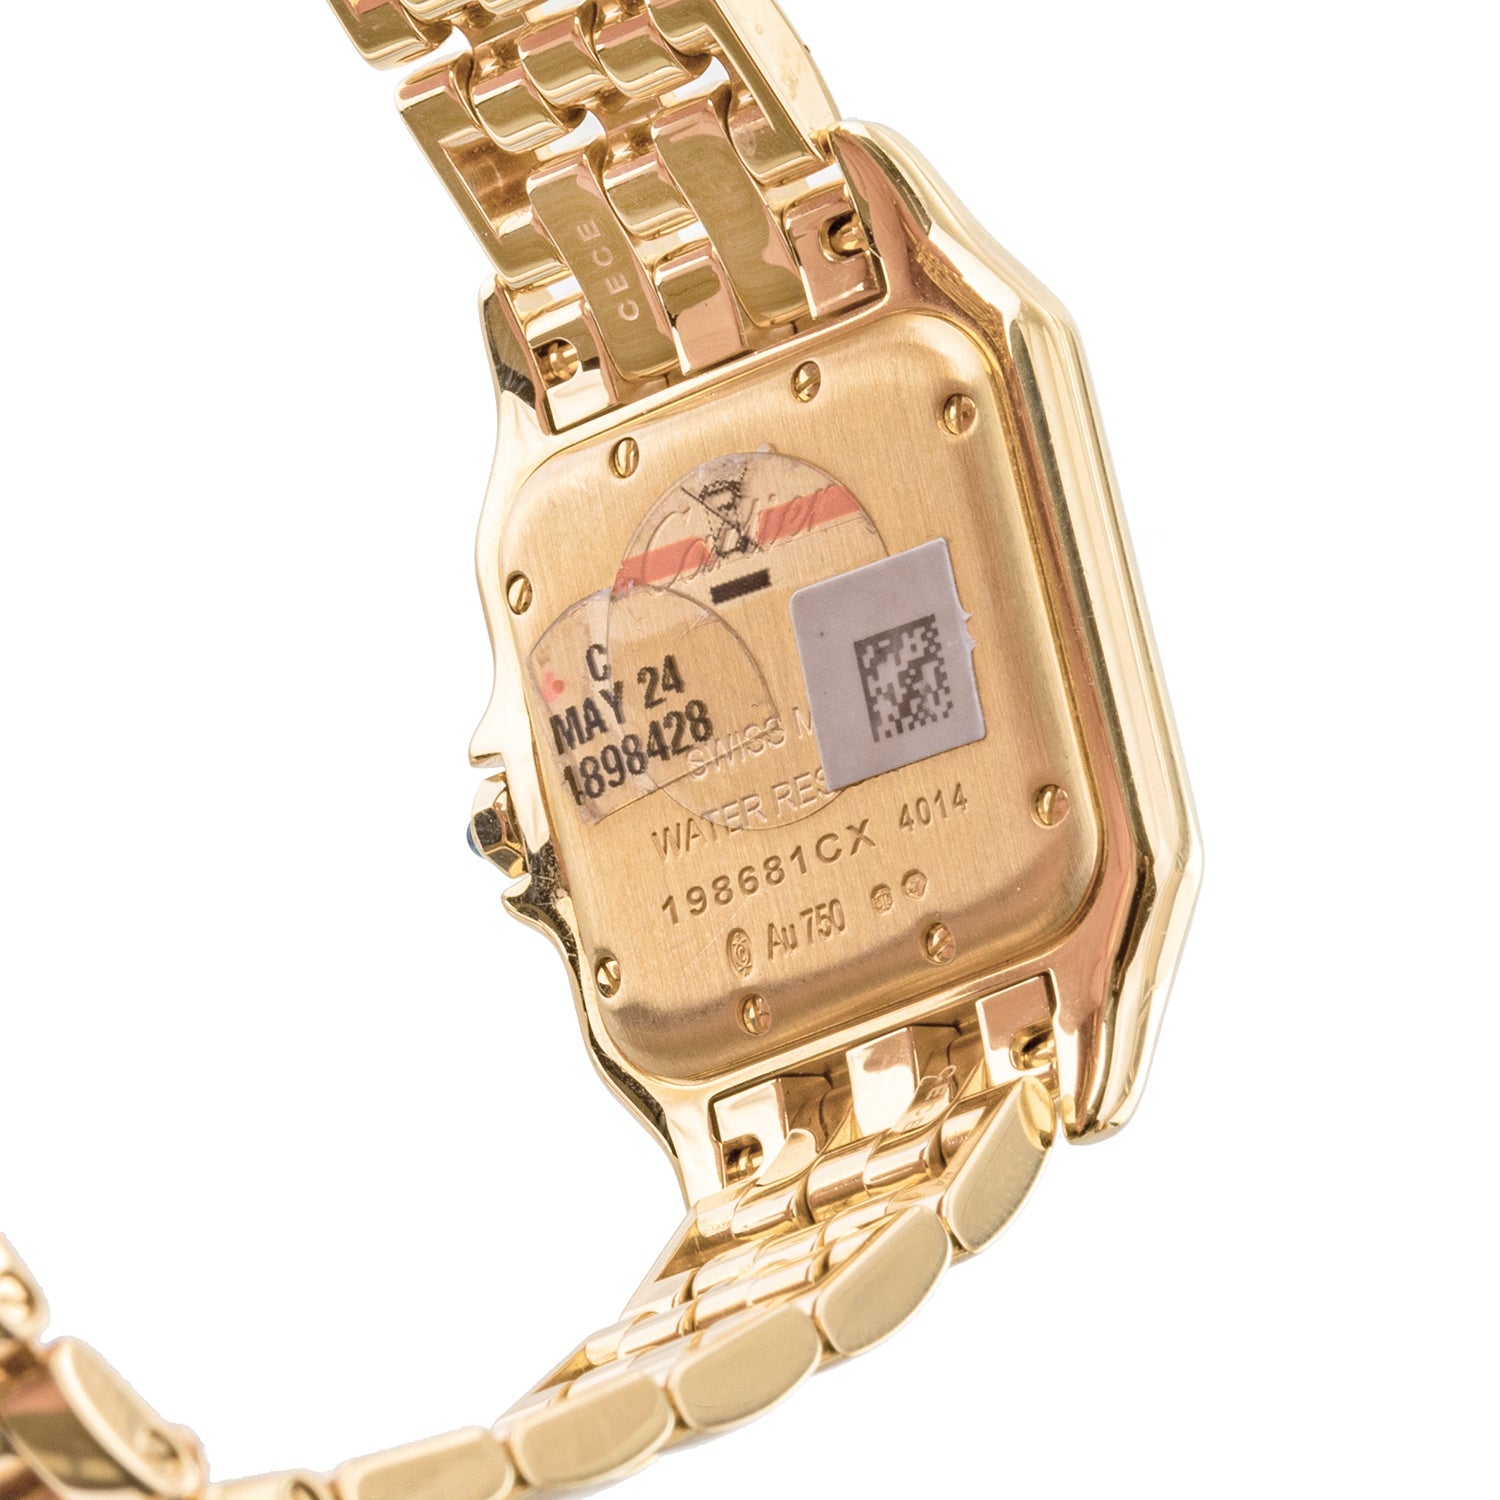 CRWJPN0009 - Panthère de Cartier watch - Medium model, quartz